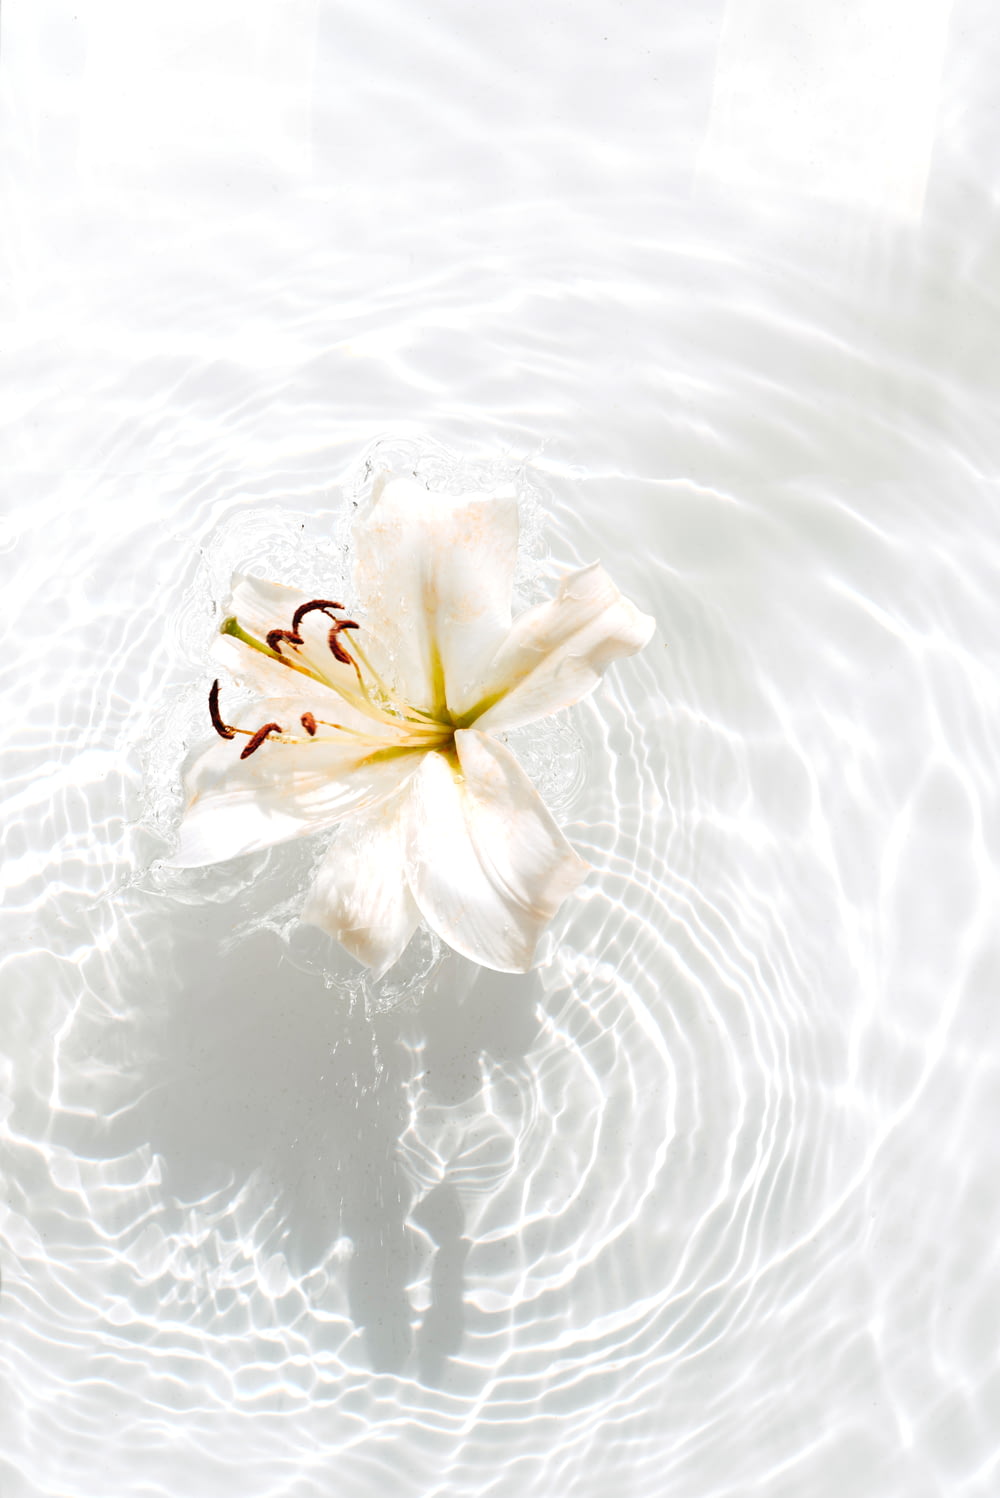 fiore bianco e giallo sull'acqua